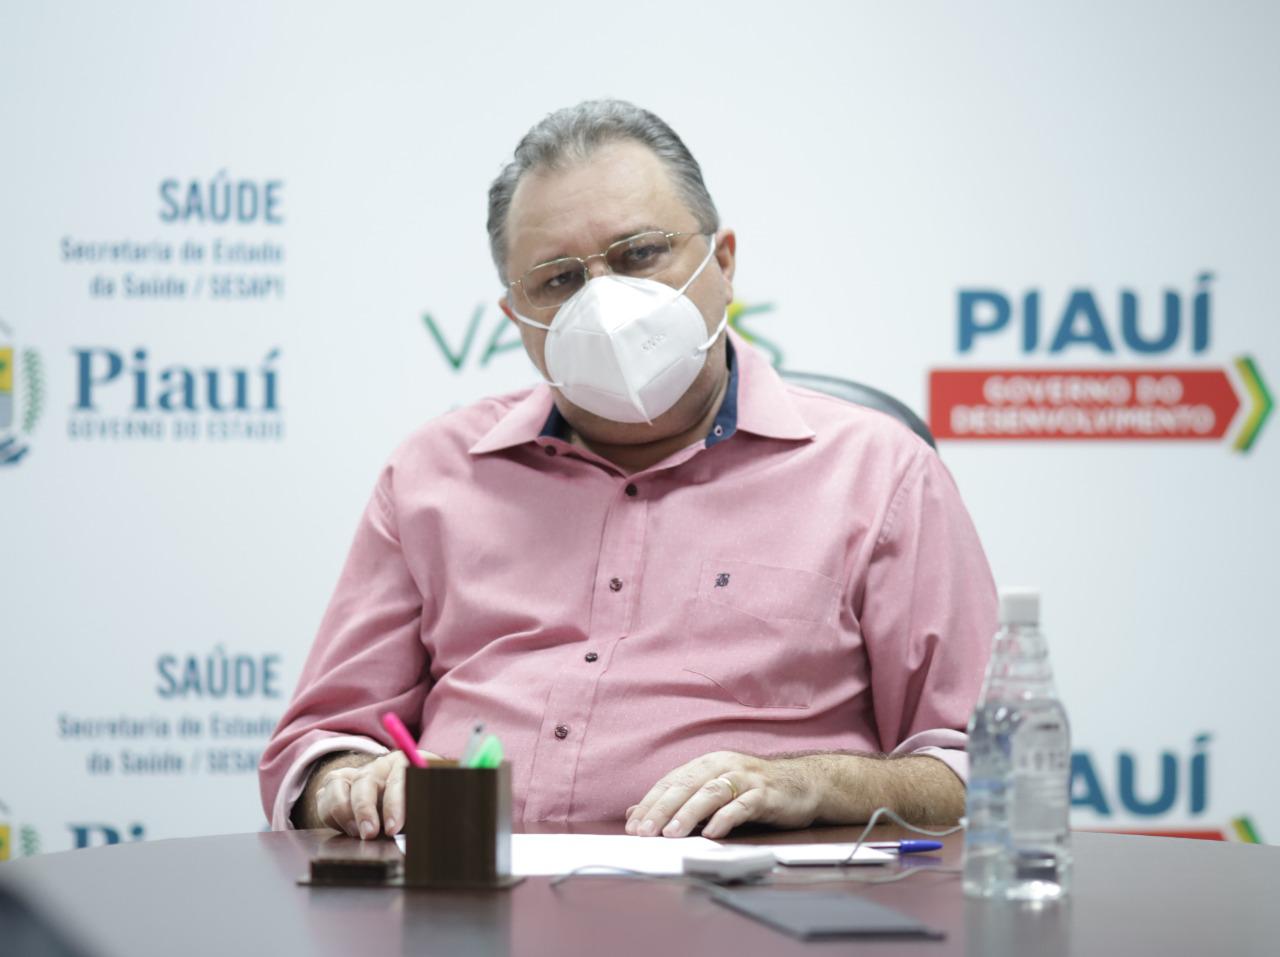 Sesapi autoriza retomada das cirurgias eletivas no Piauí